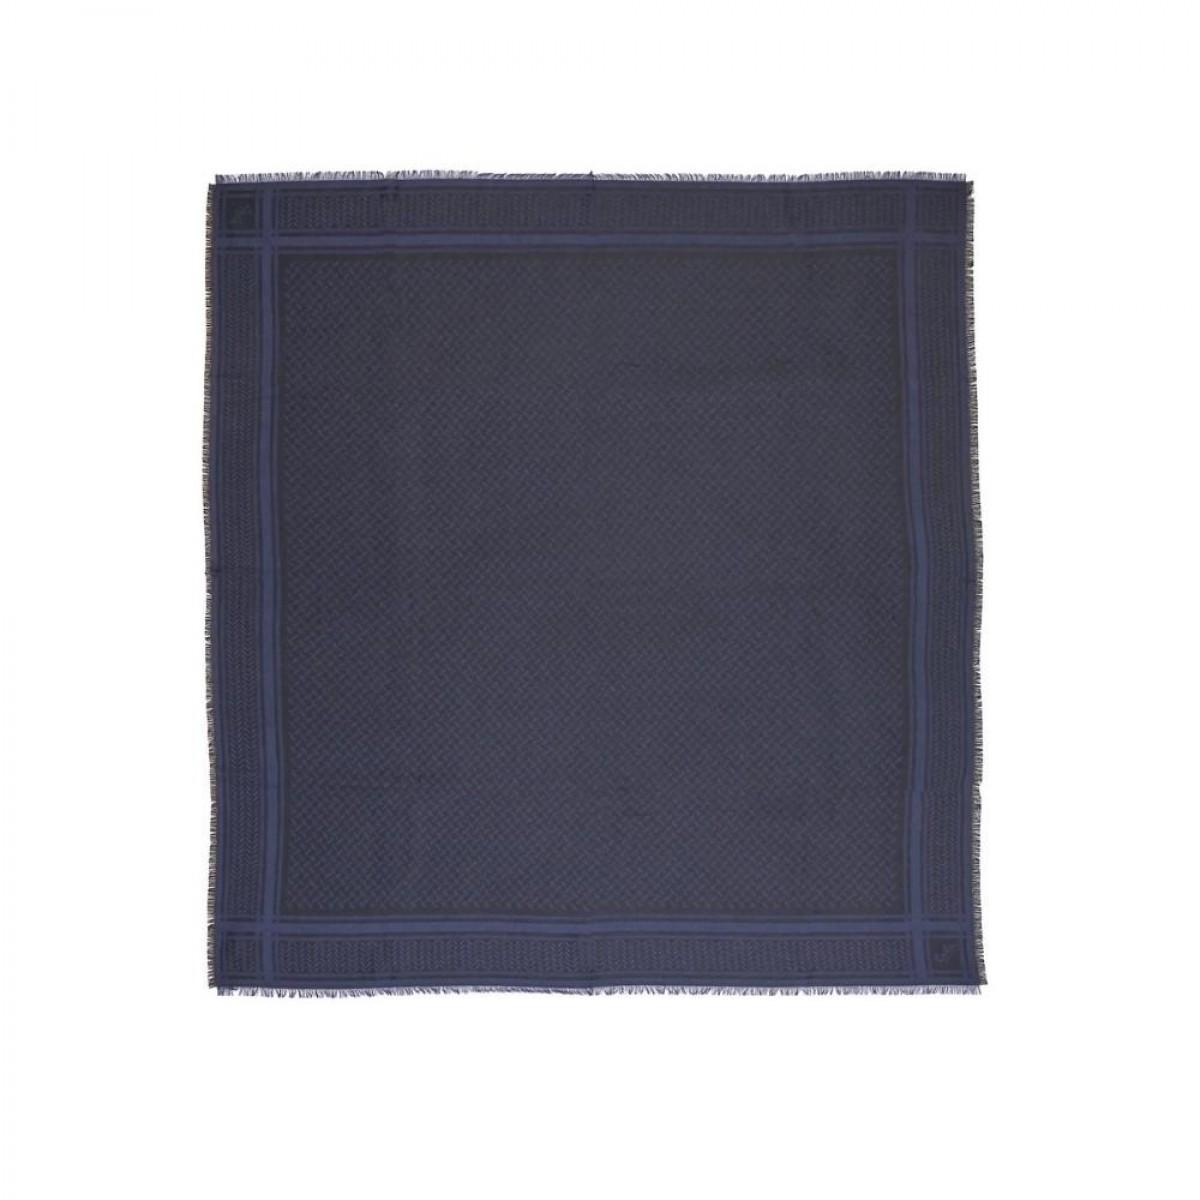 scarf aeryn - blue - front